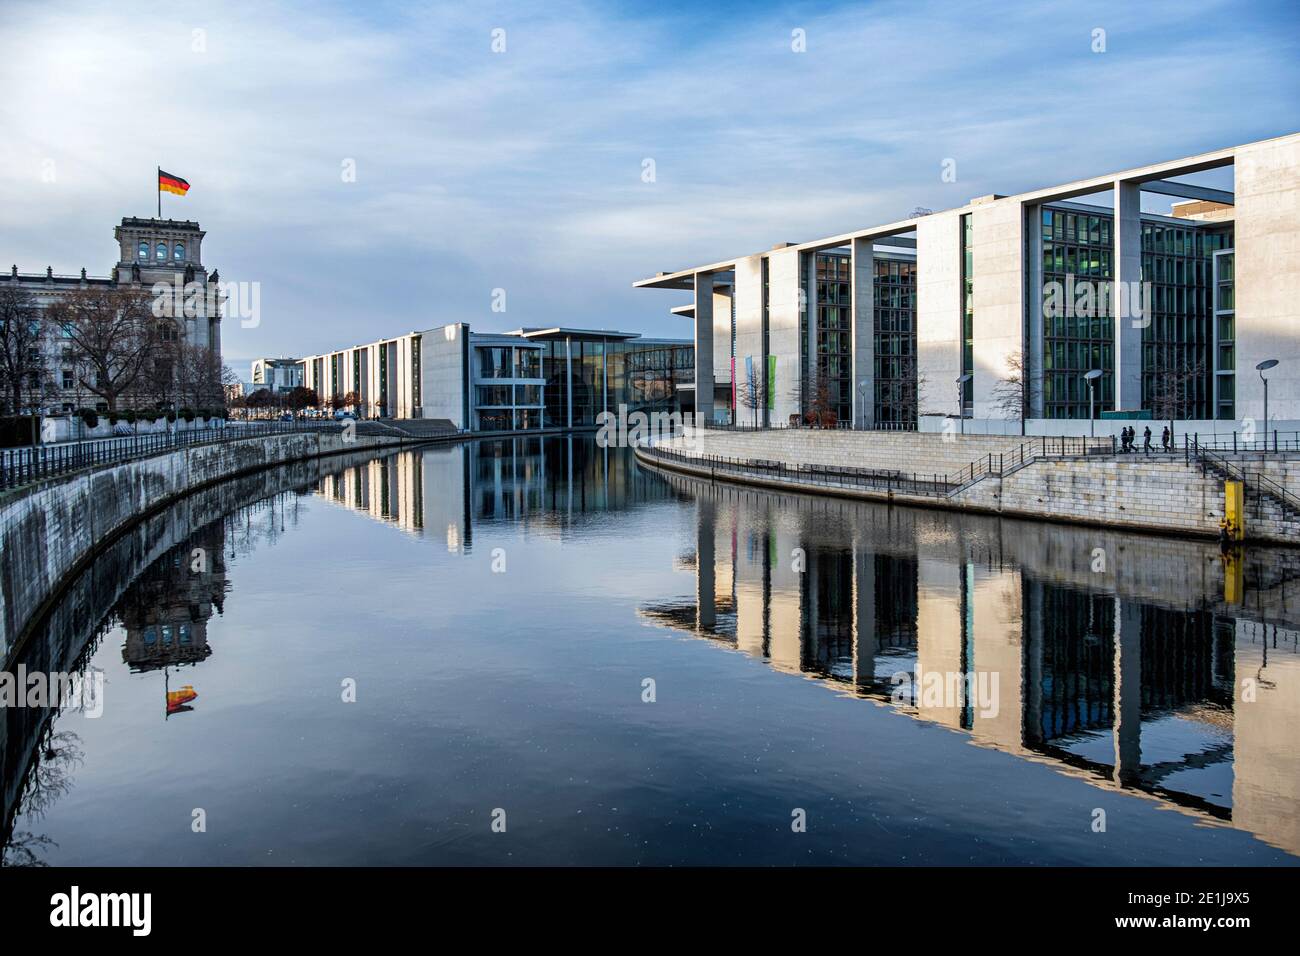 Bâtiments gouvernementaux - Reichstag, Paul-lobe-Haus et Marie-Elisabeth-Luders-Haus à côté de la rivière Spree - Mitte, Berlin, Allemagne. Banque D'Images